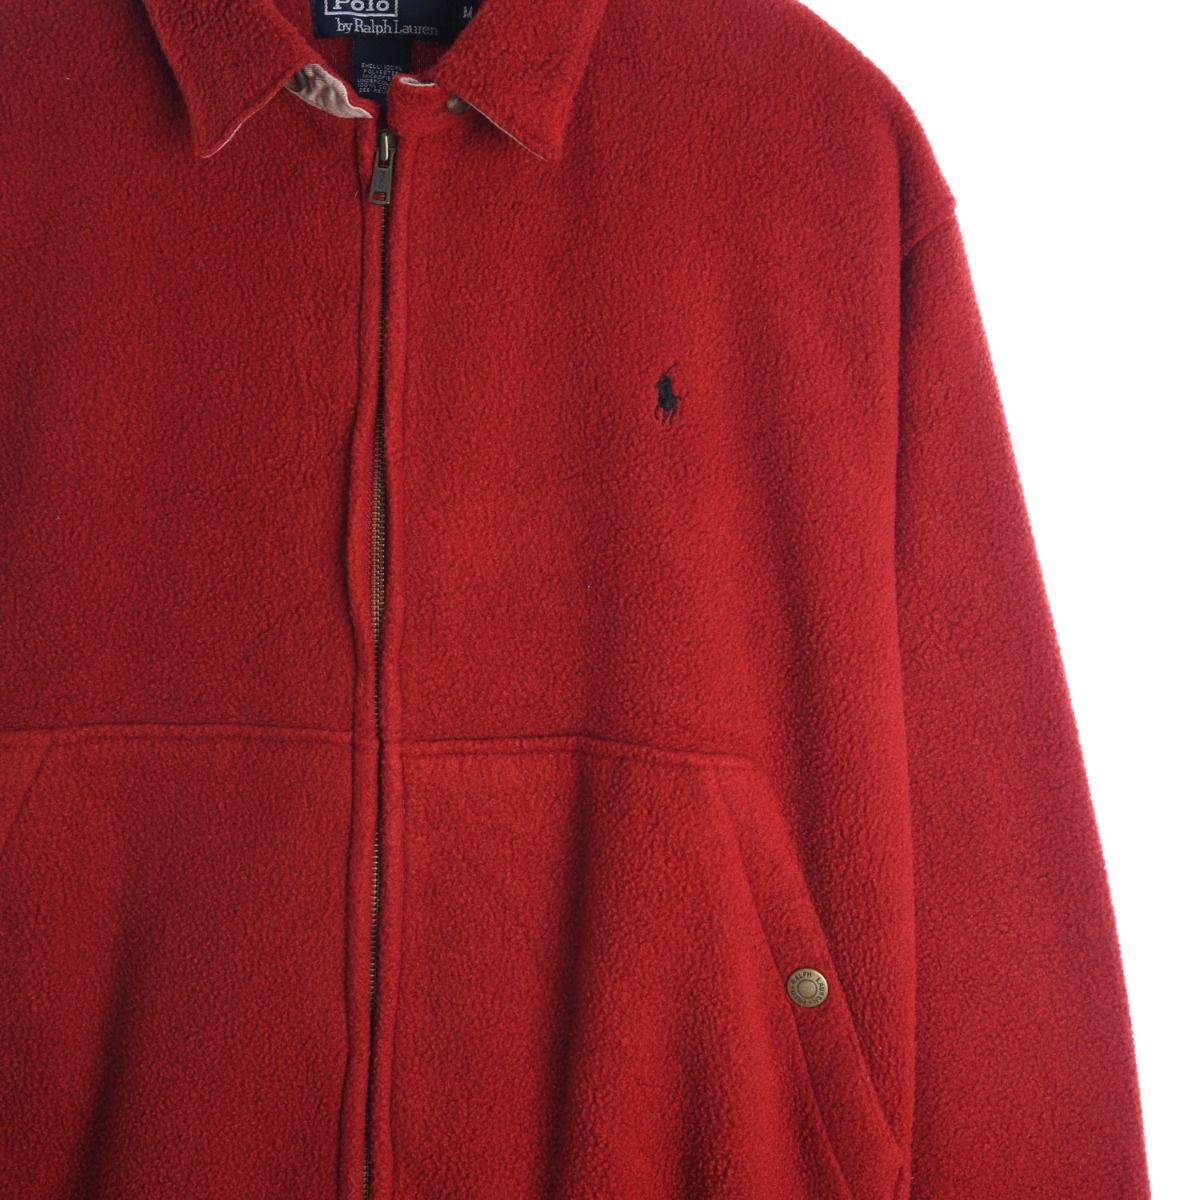 Polo Ralph Lauren 1990s Fleece Harrington Red Jacket